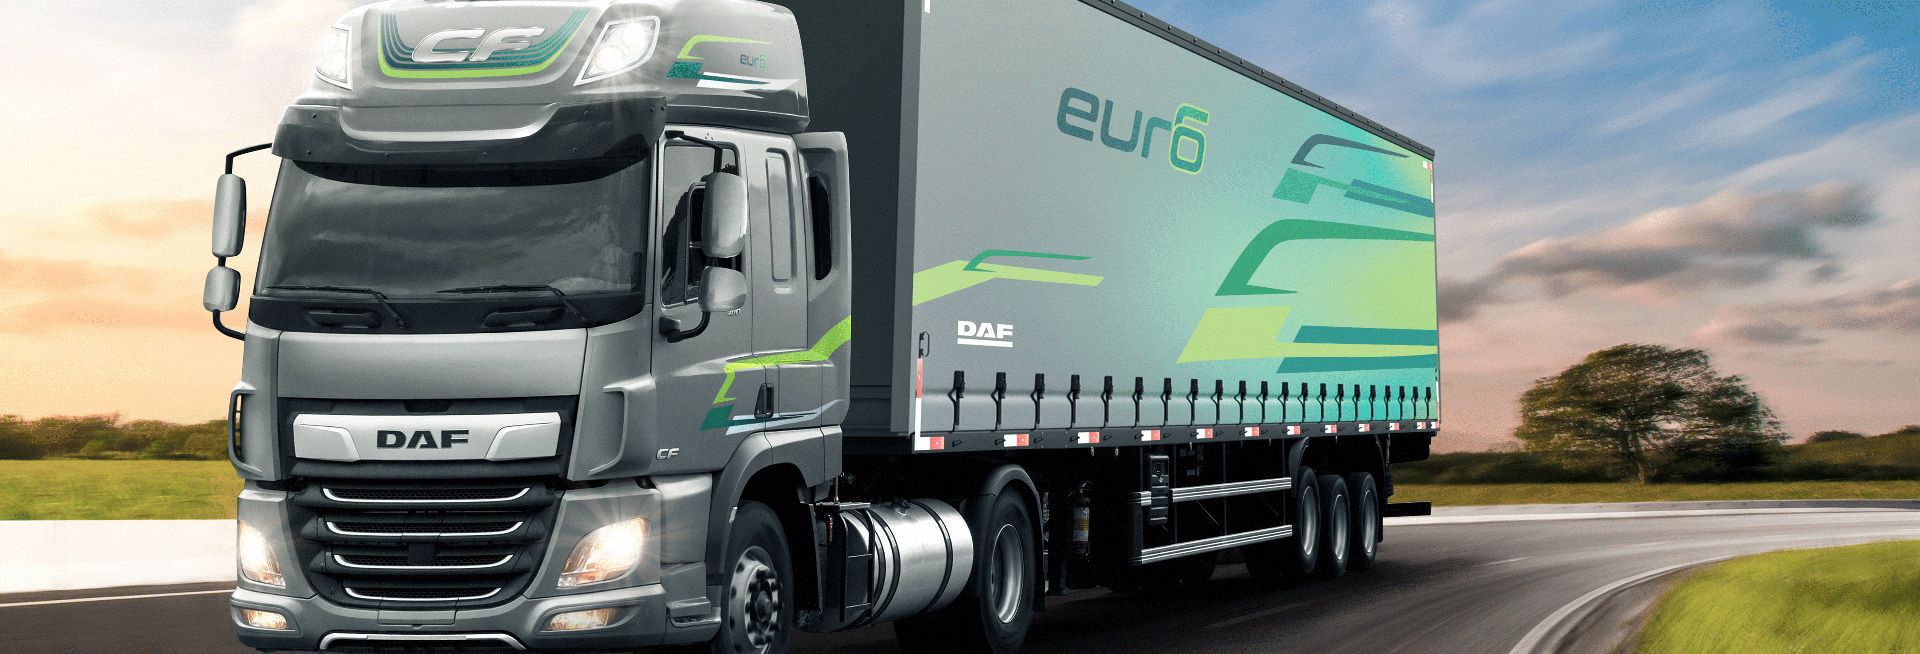 DAF lança os caminhões CF e XF com motores Euro 6 na Fenatran